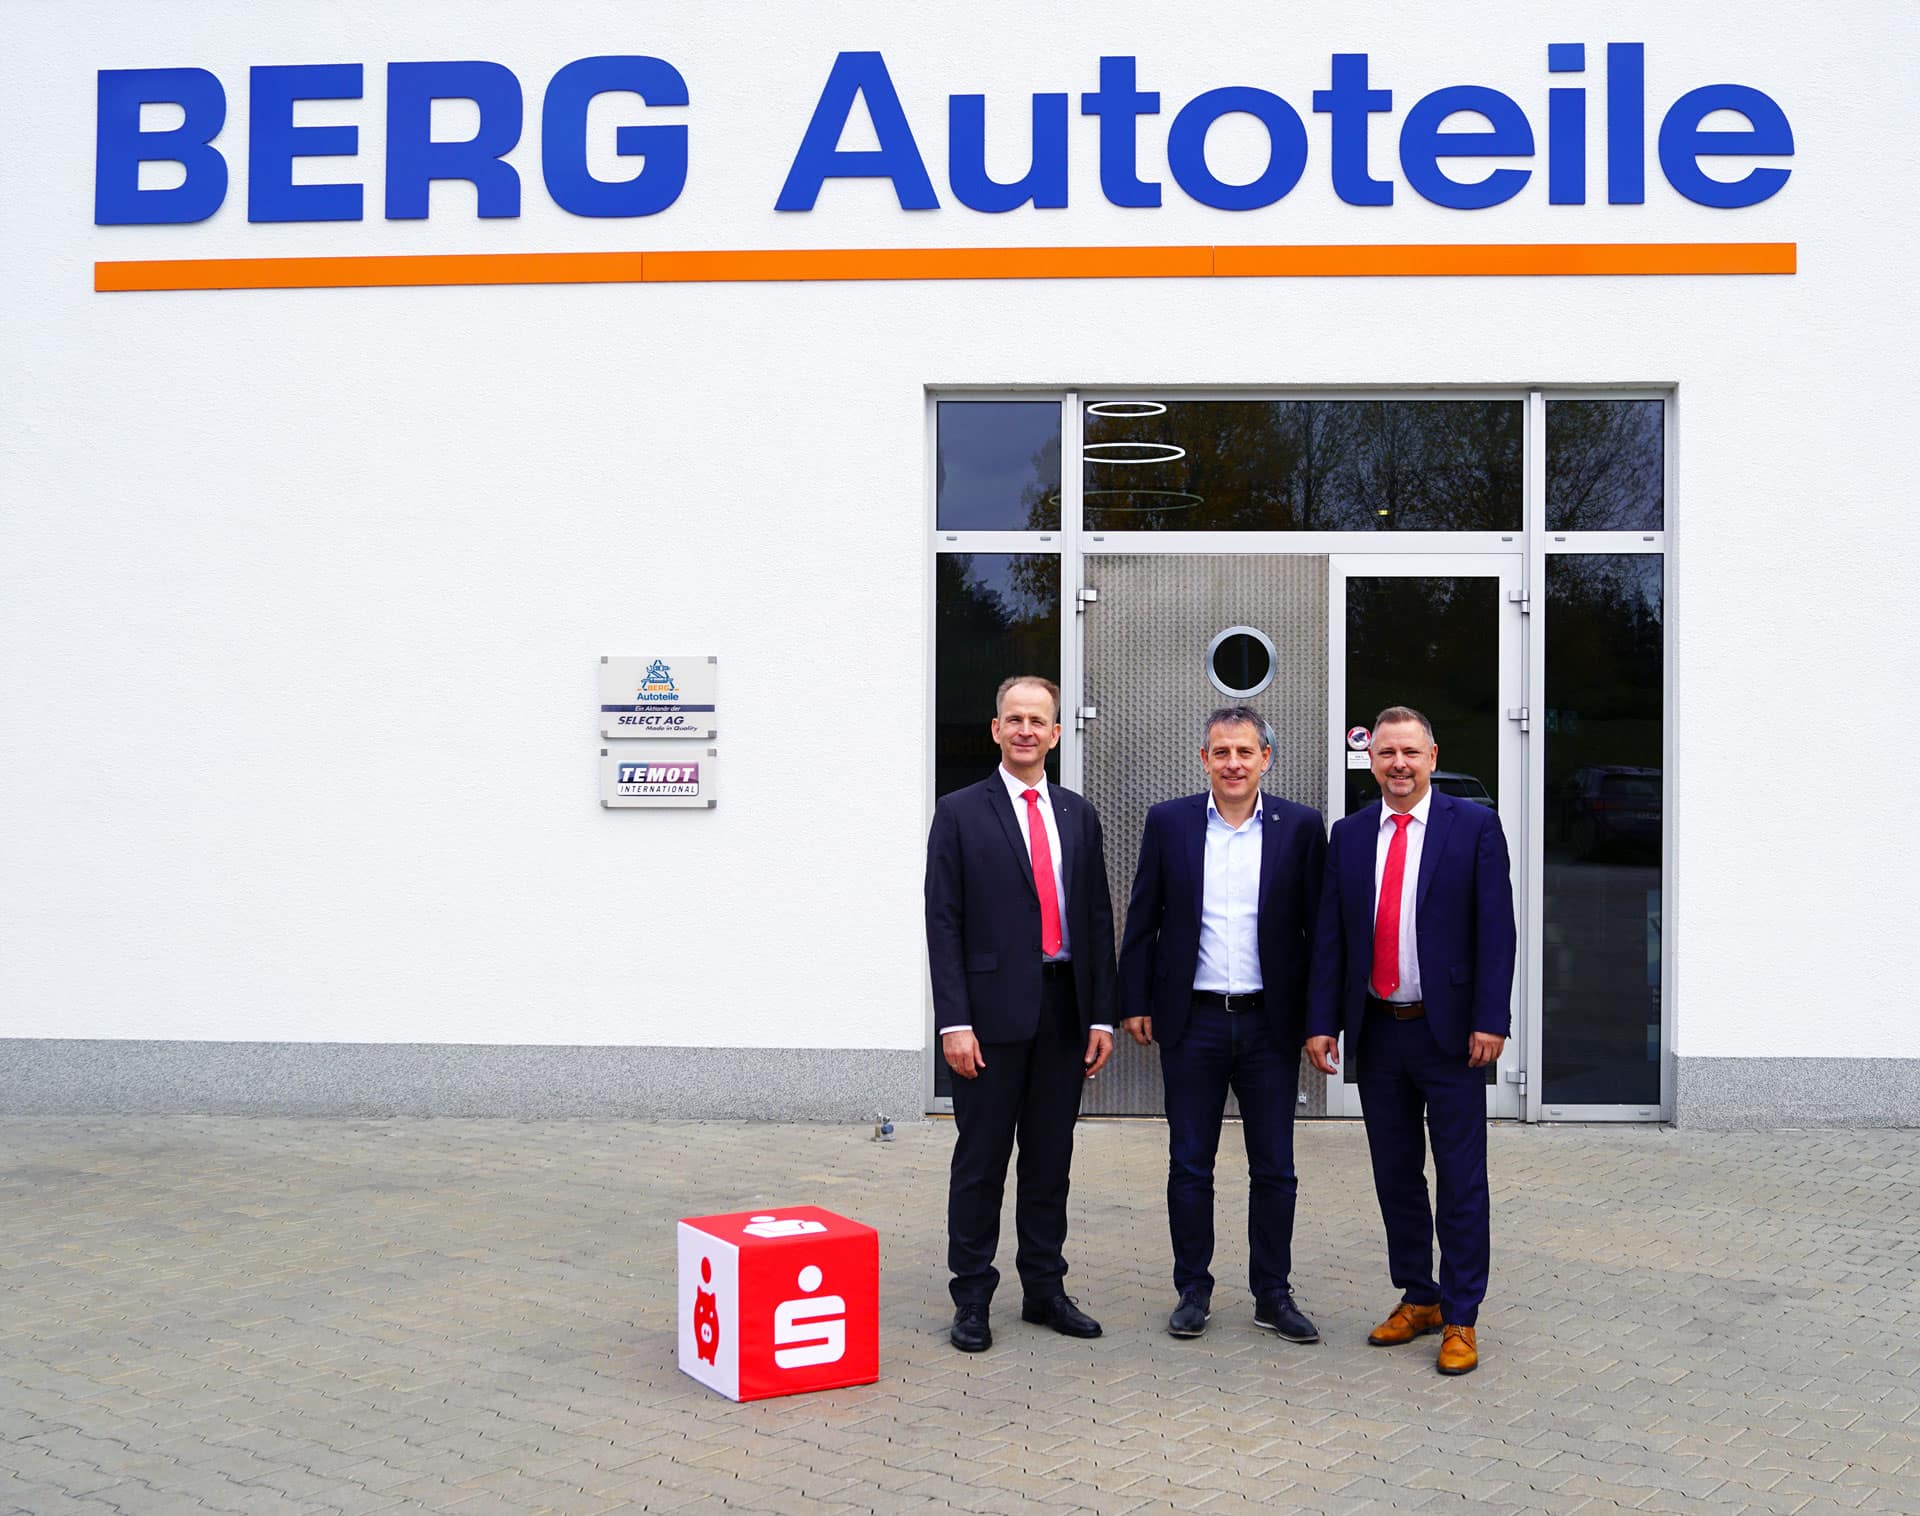 Das Unternehmen BERG Autoteile ist Kunde der KSK Stendal